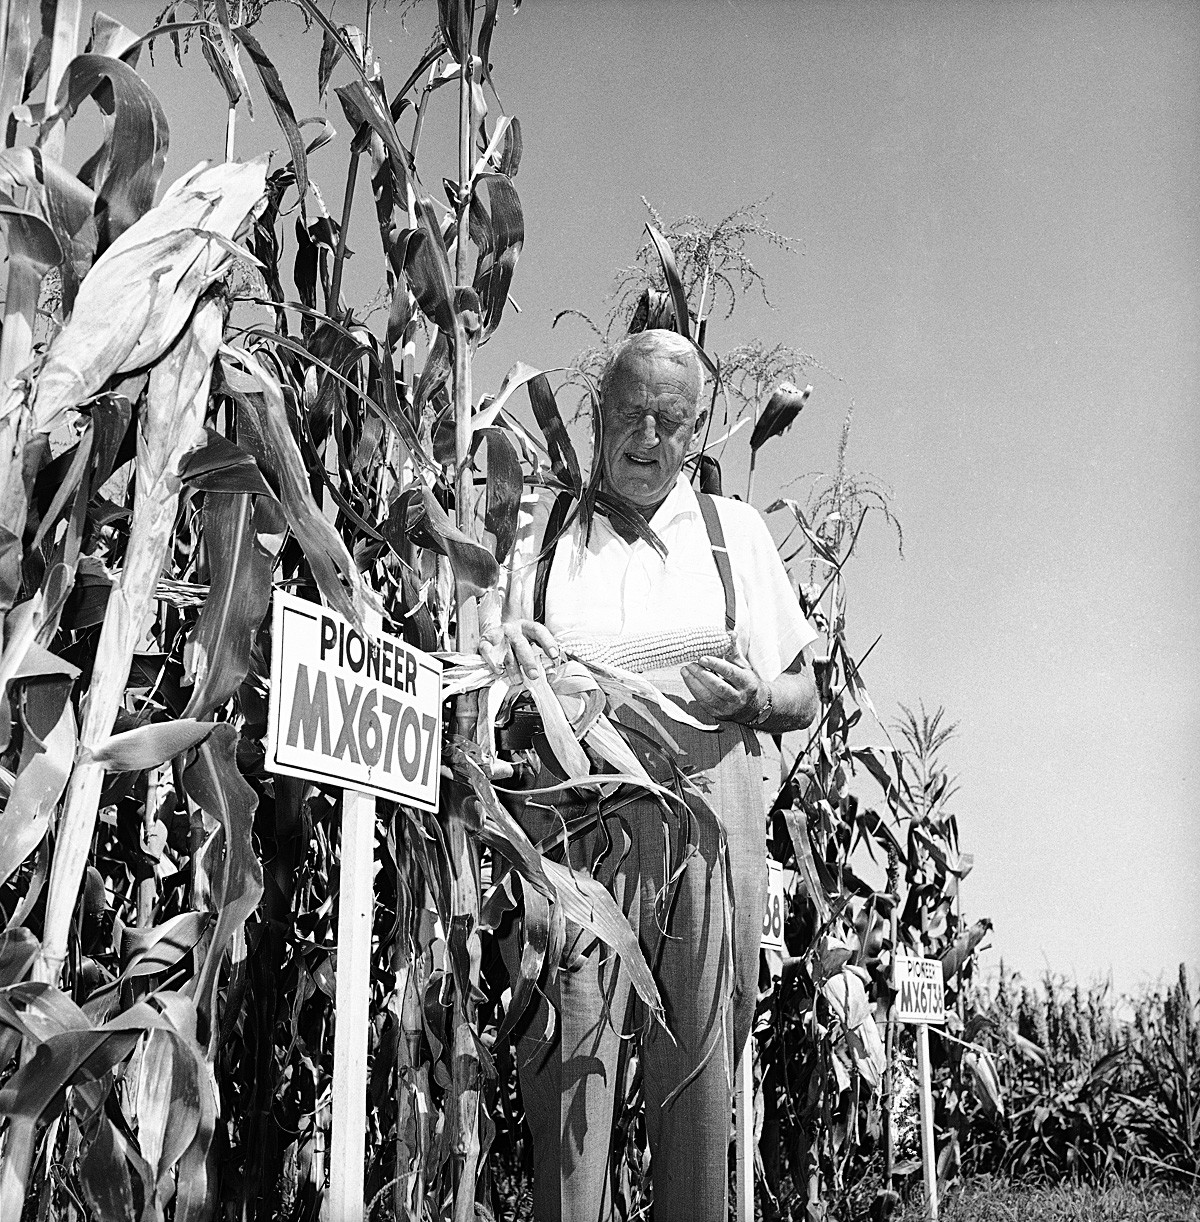  Розуел Гарст ревизира царевица на пробния си имот в своята плантация в Айова, 9 септември 1959 година. Гарст създава царевица за приложимост като храна за добитък, радикална техника, която провокира гражданска война във фермата. 